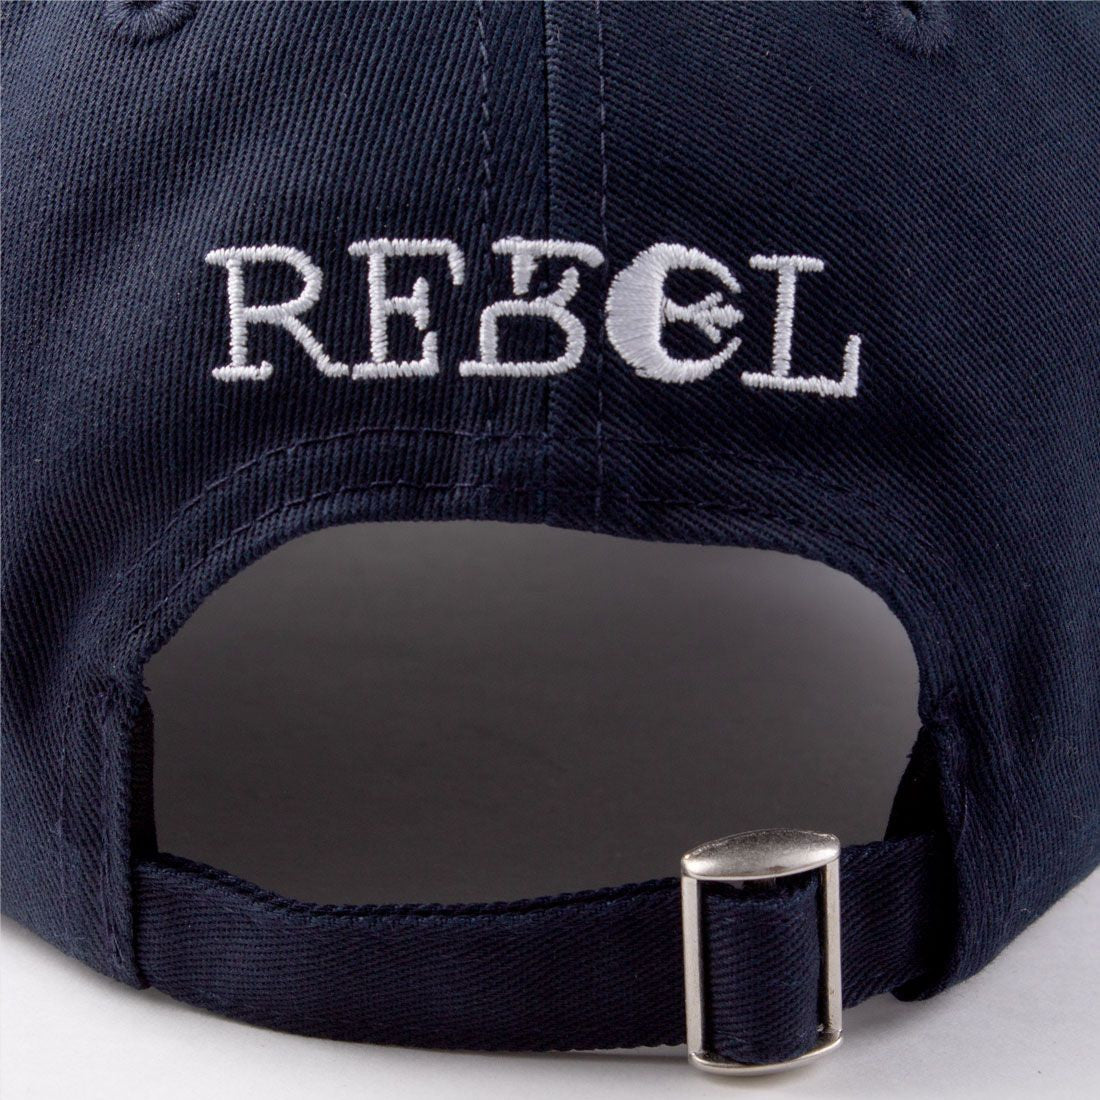 Star Wars Cap - Rebel Metal Badge